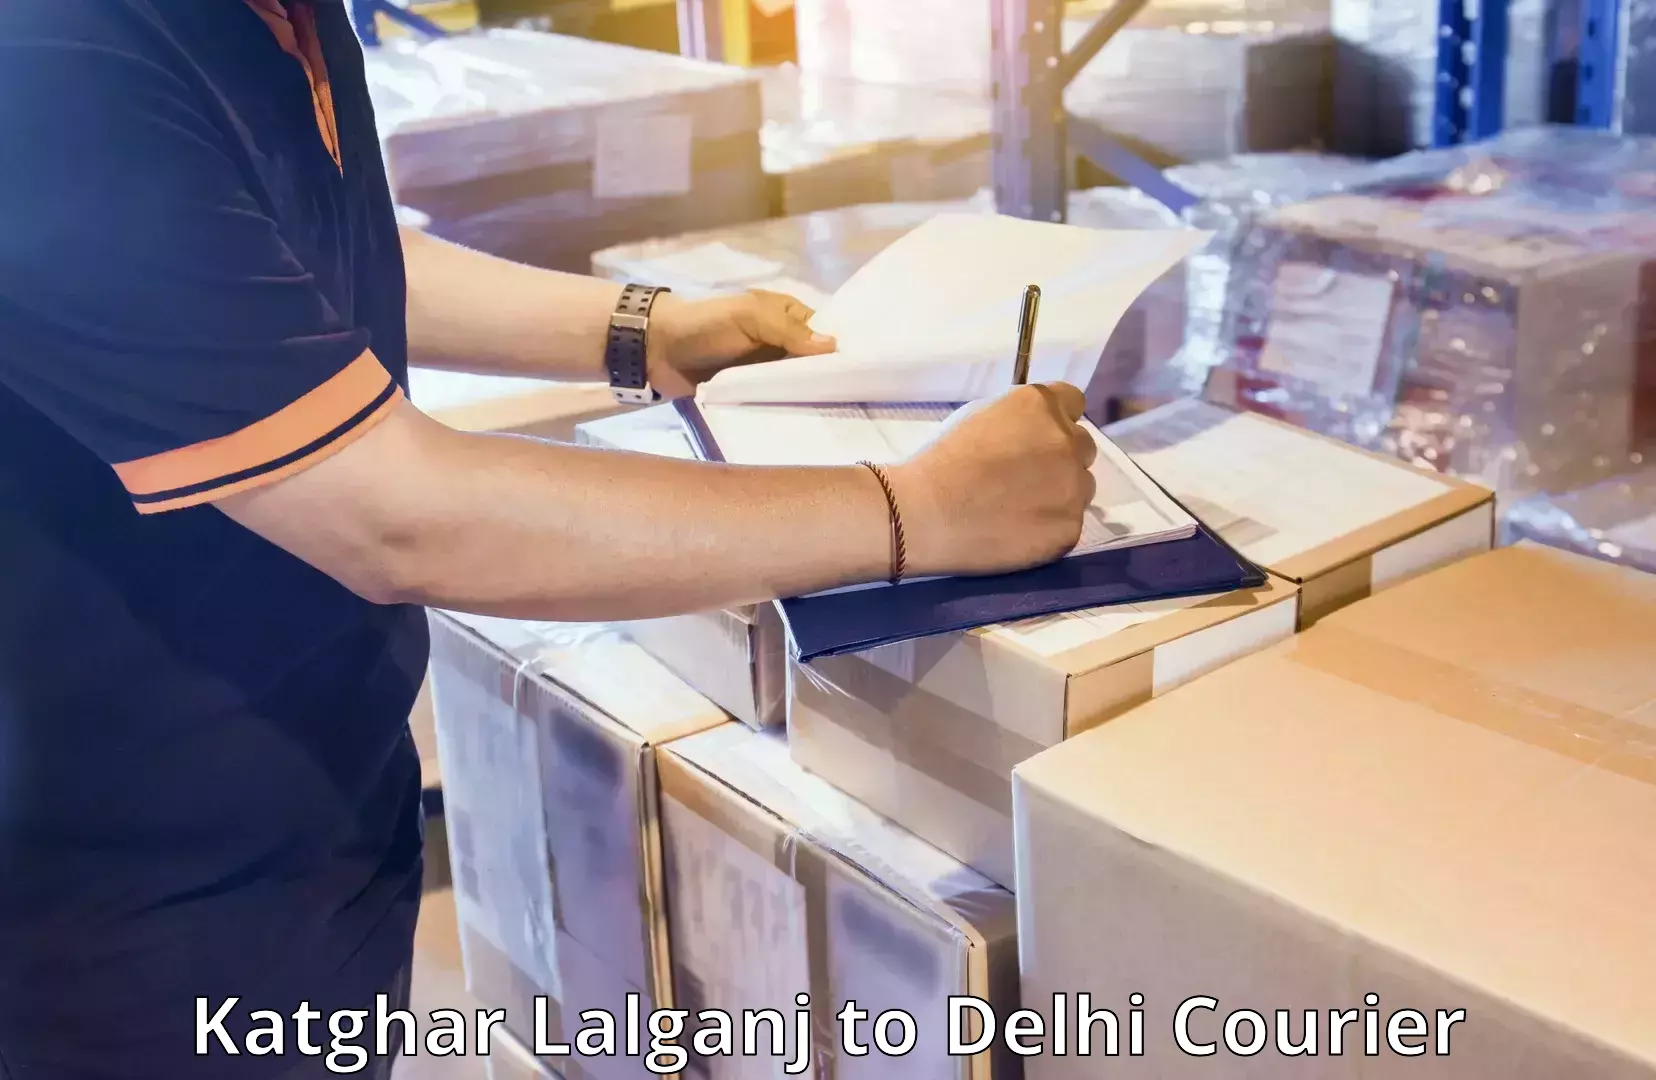 Luggage transport deals Katghar Lalganj to Delhi